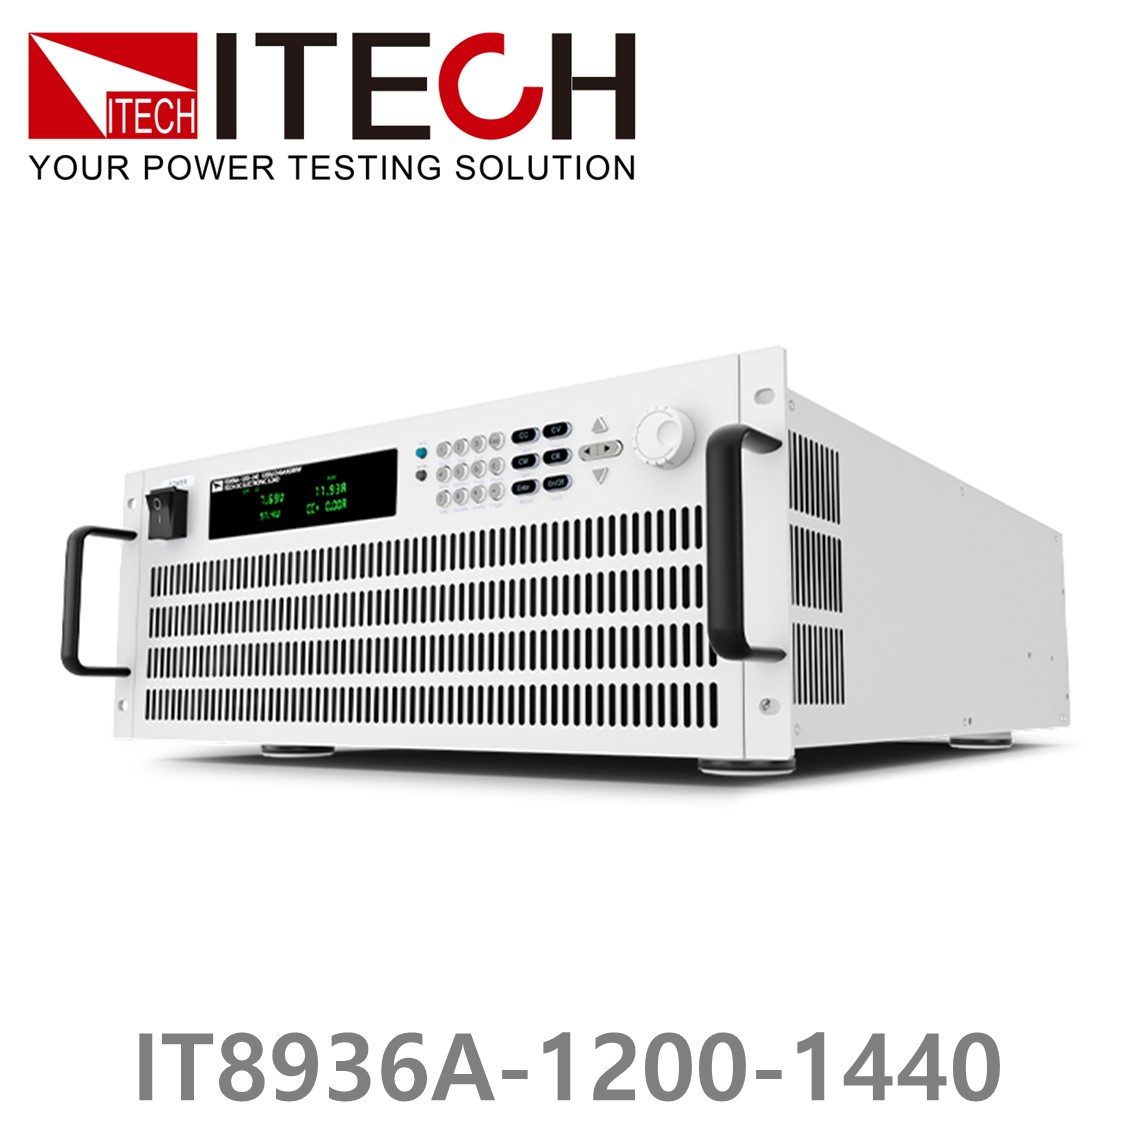 [ ITECH ] IT8936A-1200-1440  고성능 고전력 DC 전자로드 1200V/1440A/36kW (27U)